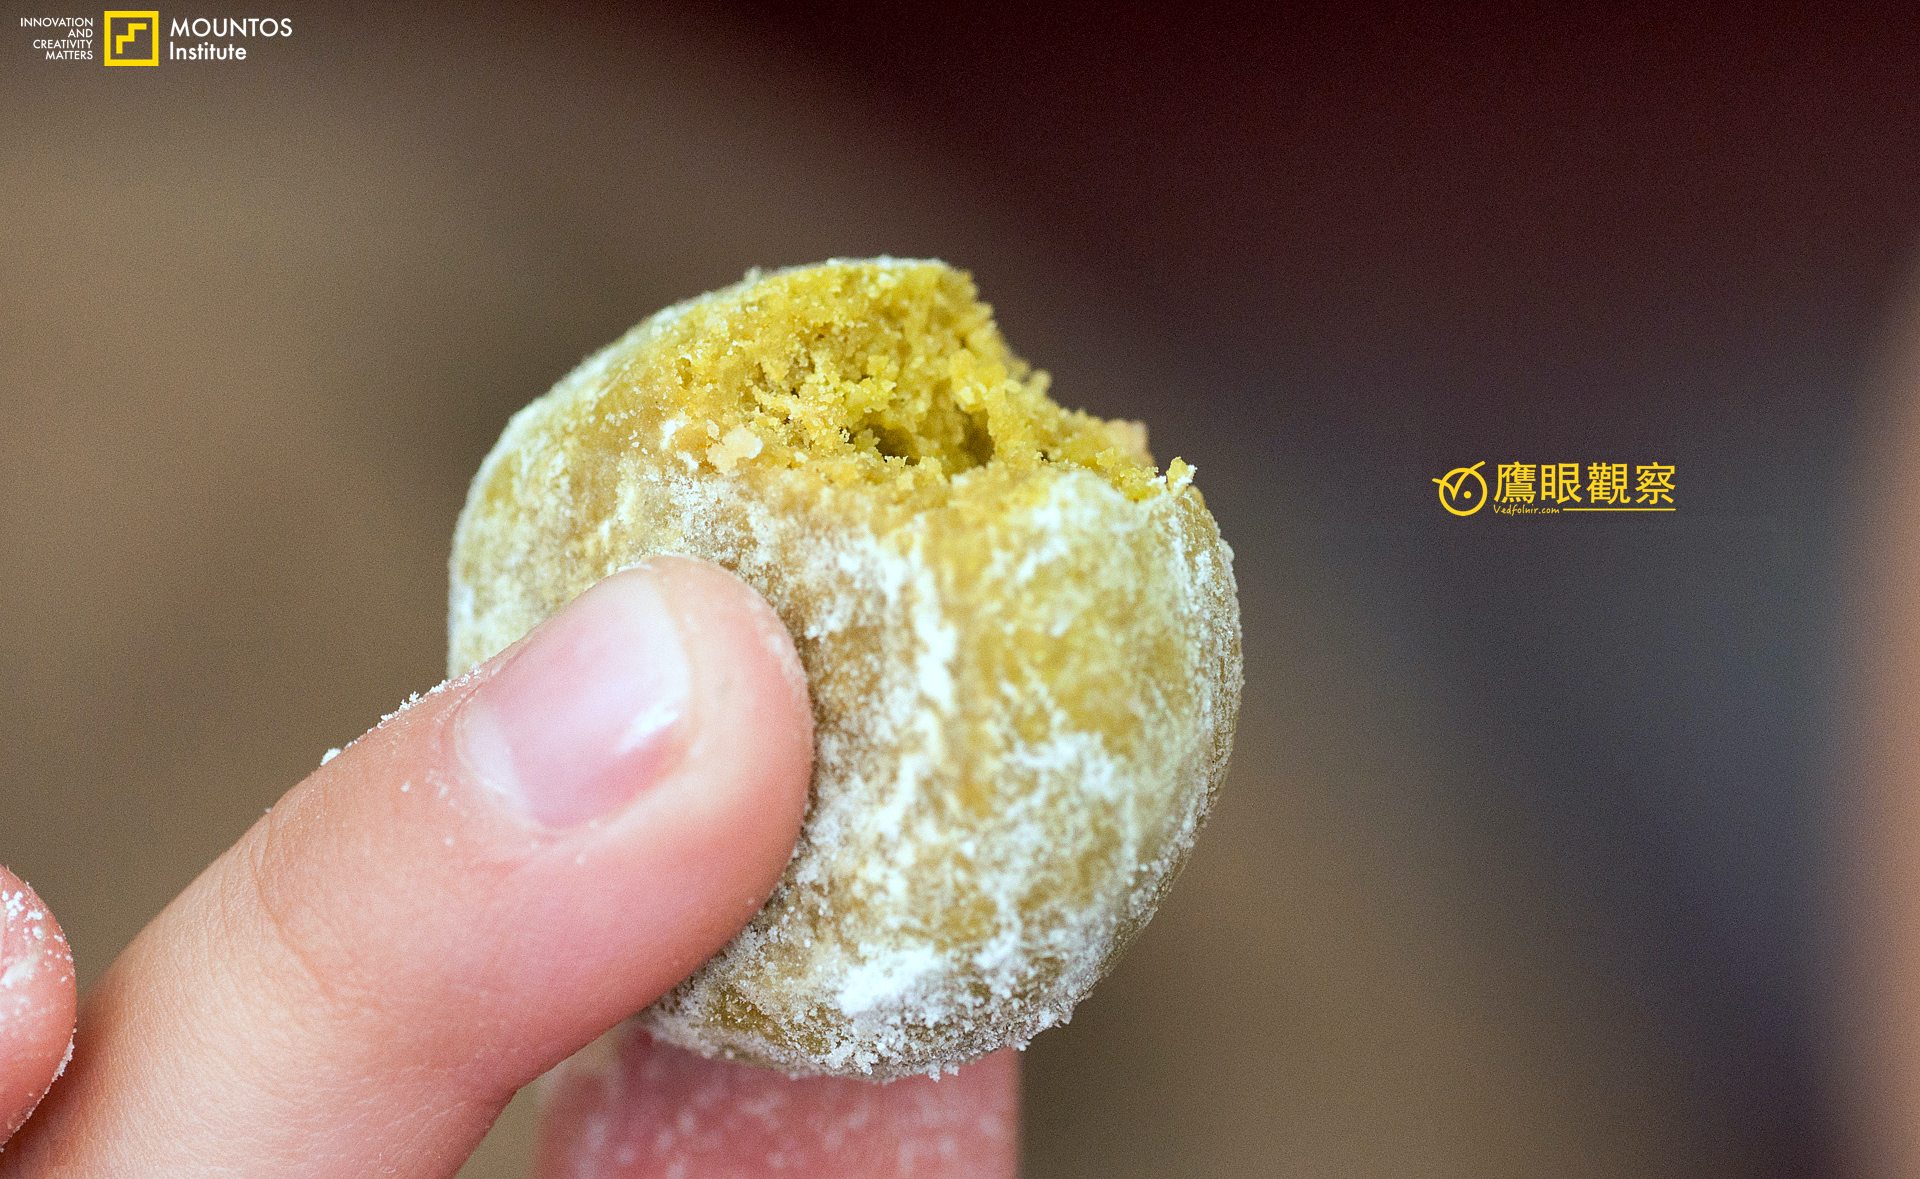 試吃體驗：奶油泡泡、雪球餅乾 (Snowball Cookie) 的試吃心得與食譜作法分享